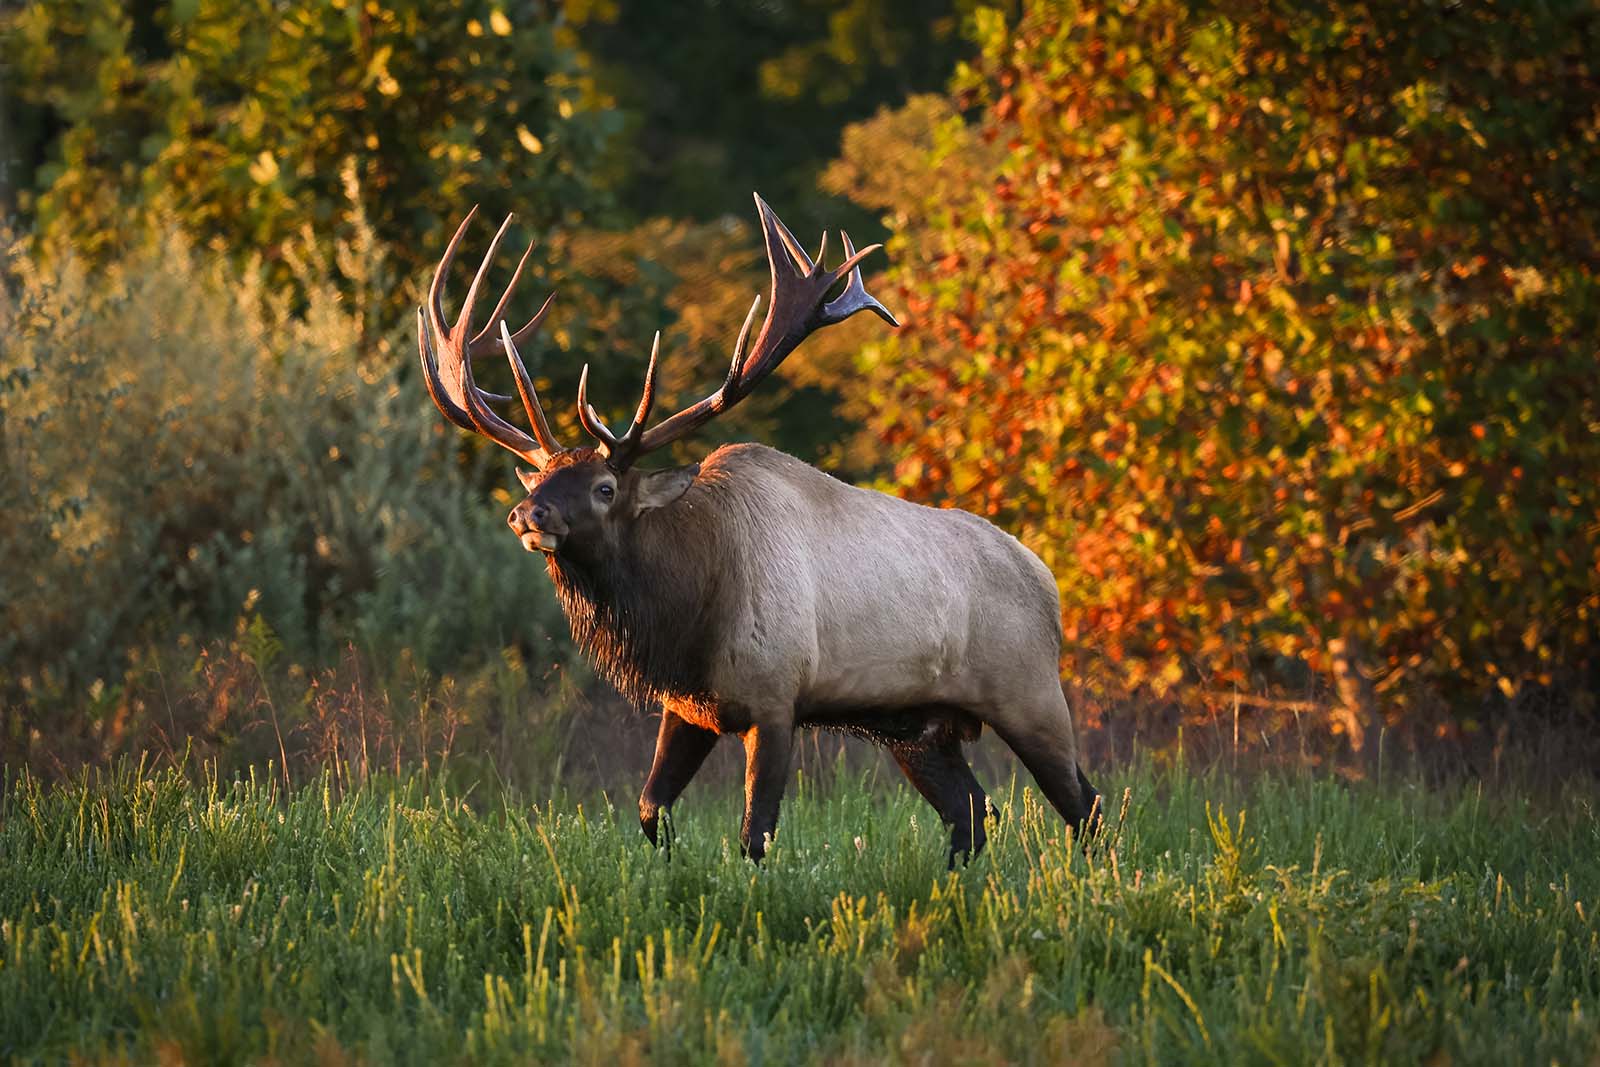 A bull elk standing in a field lit by a golden sunrise